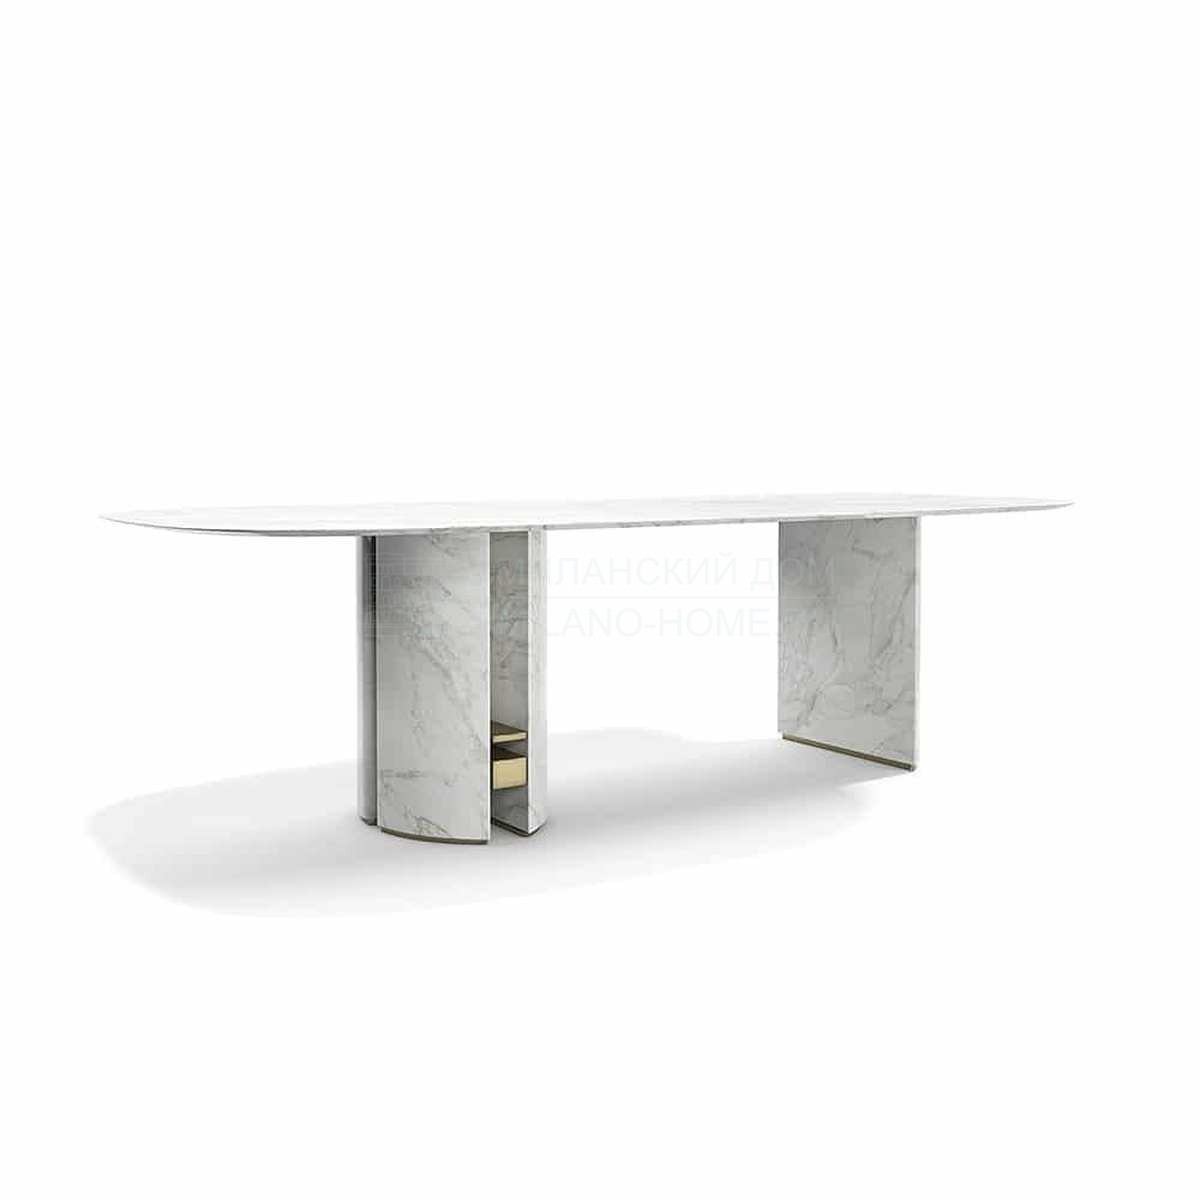 Обеденный стол Ercole table oval из Италии фабрики CAPITAL Collection